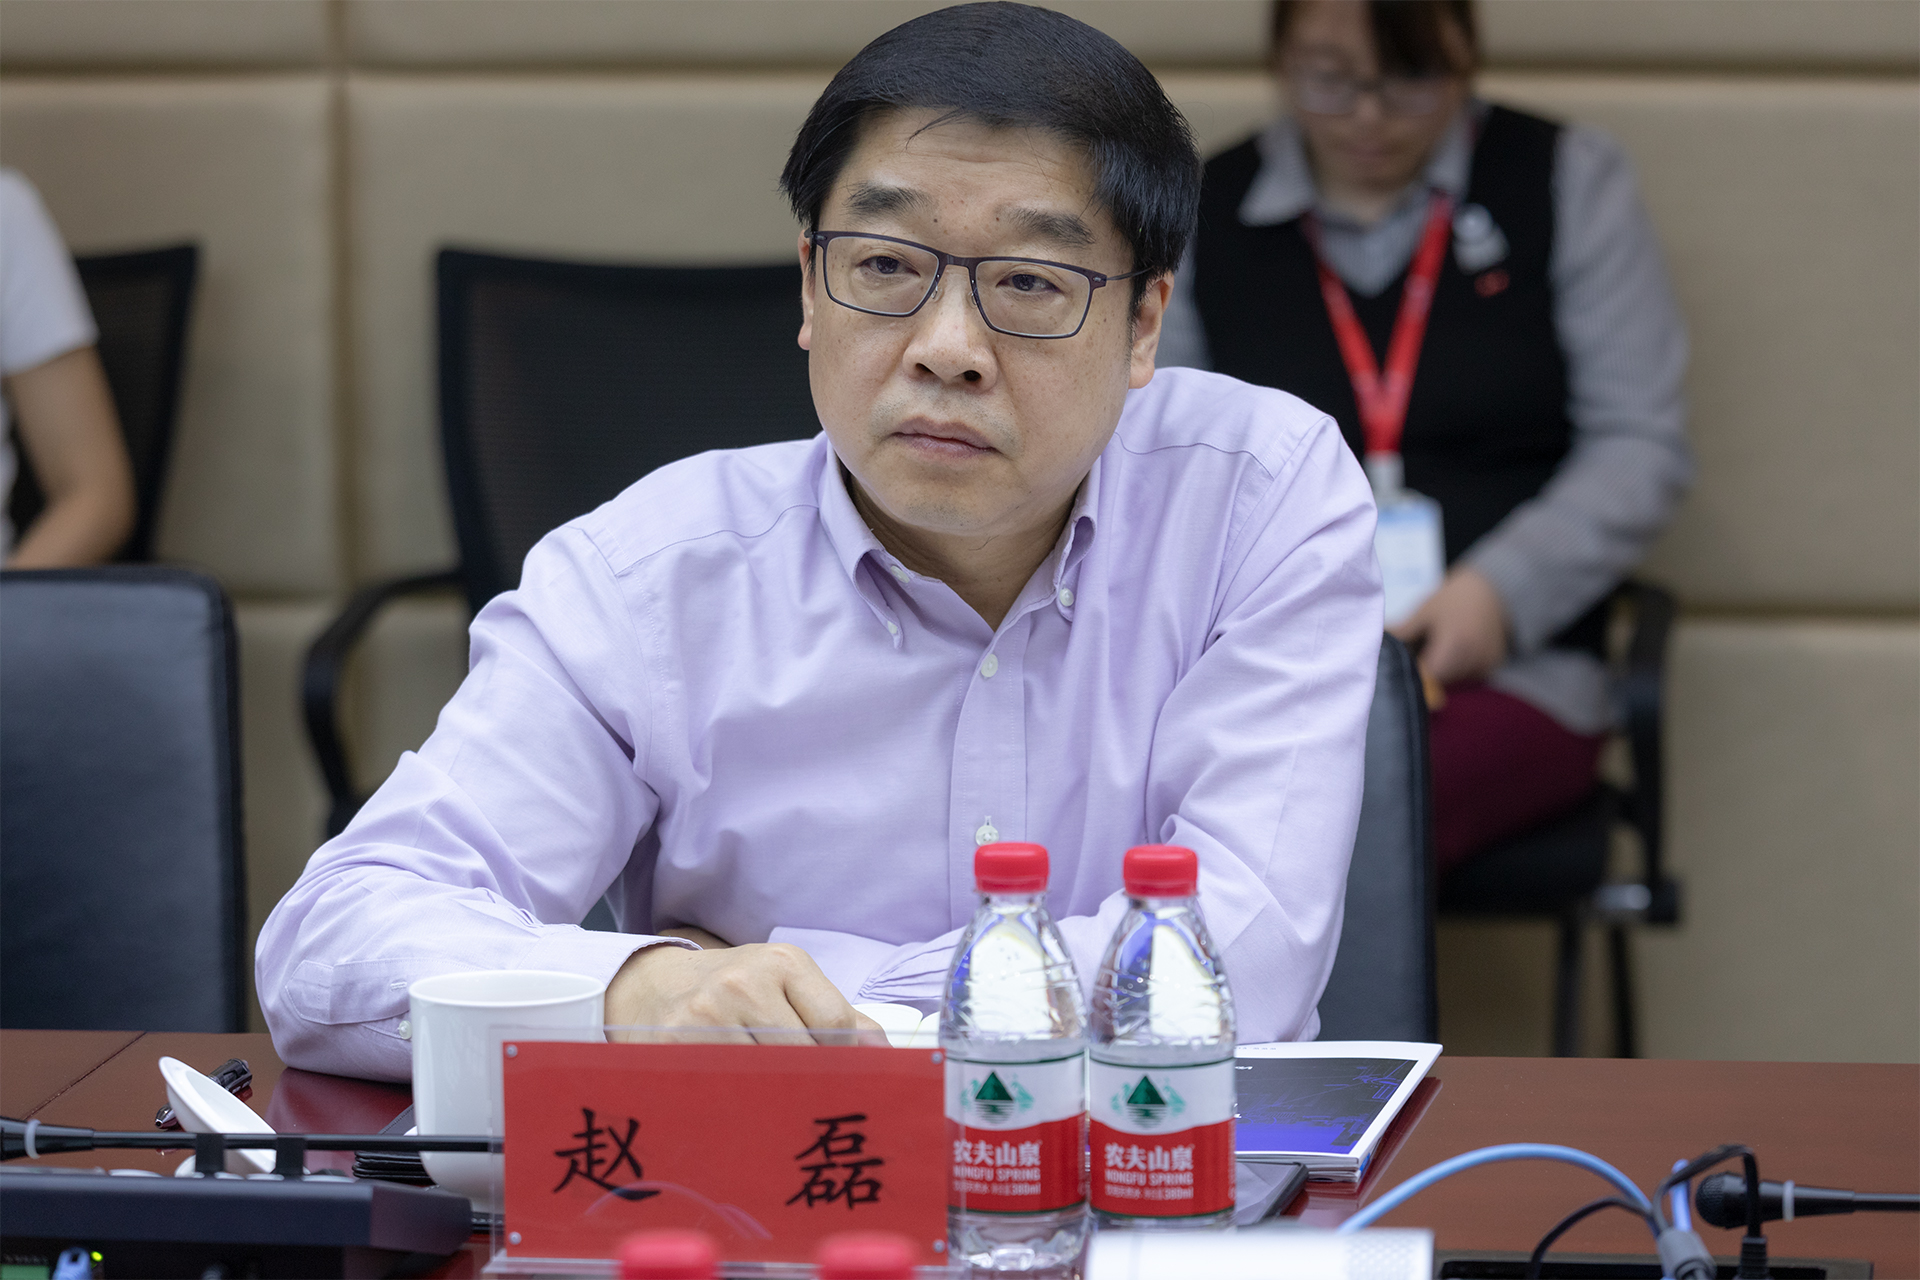 北京市委宣传部领导一行到访视联动力对视联网工作给予充分肯定